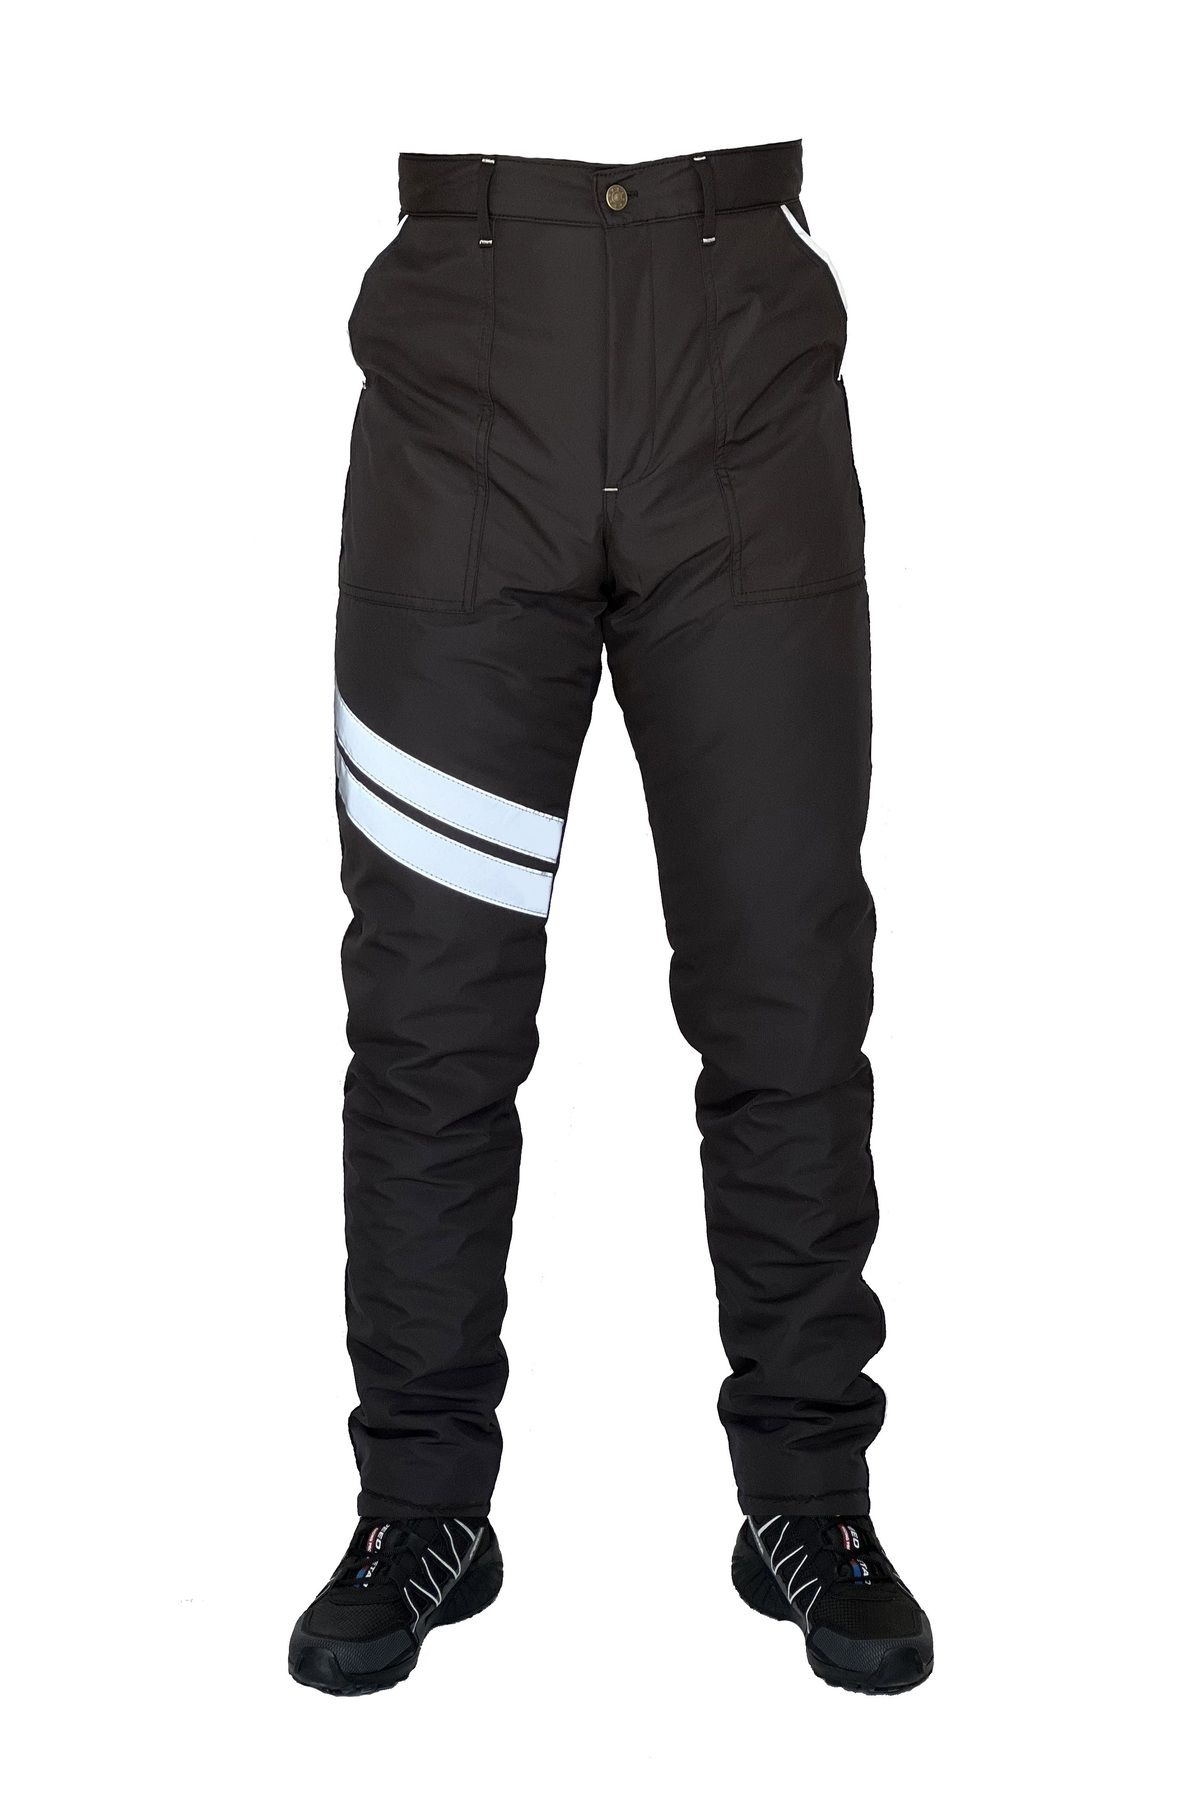 Ysf WorkWear İş Market Su Iticili Rüzgar Geçirmez -40 Elyaf Takviyeli Siyah Soğuk Hava Motorcu Pantolonu